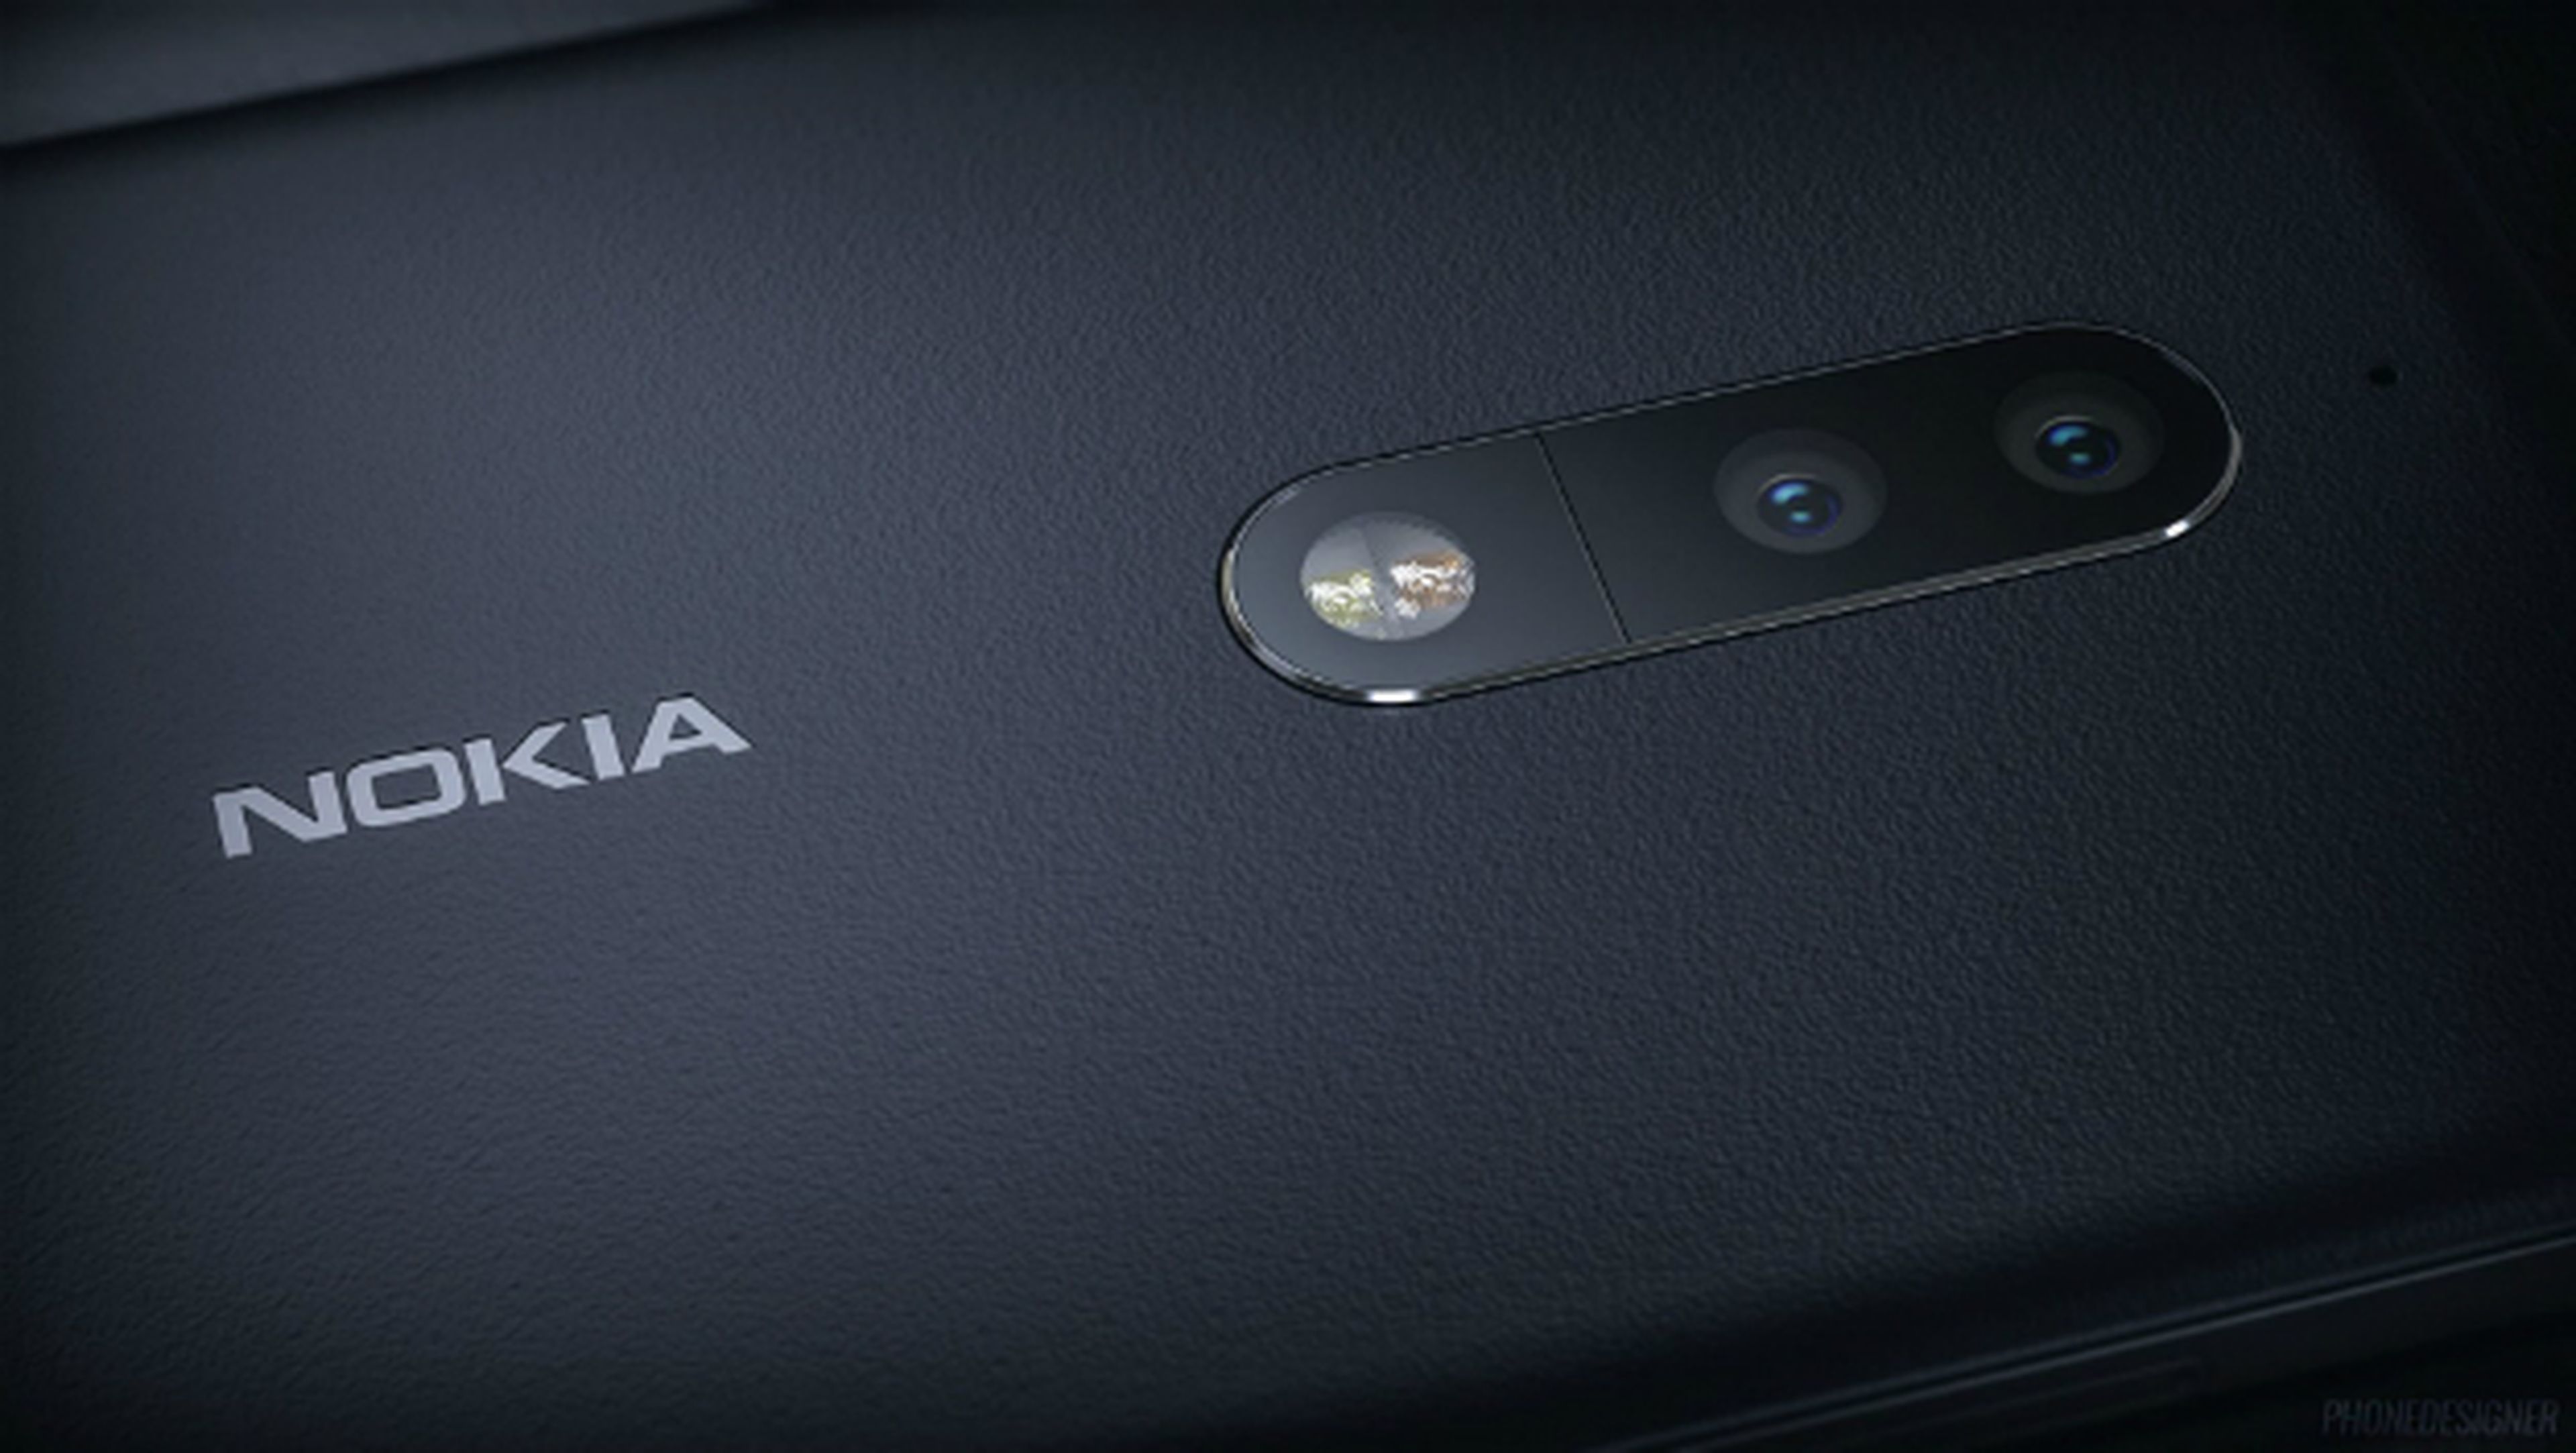 Características, especificaciones y más detalles sobre Nokia 9.